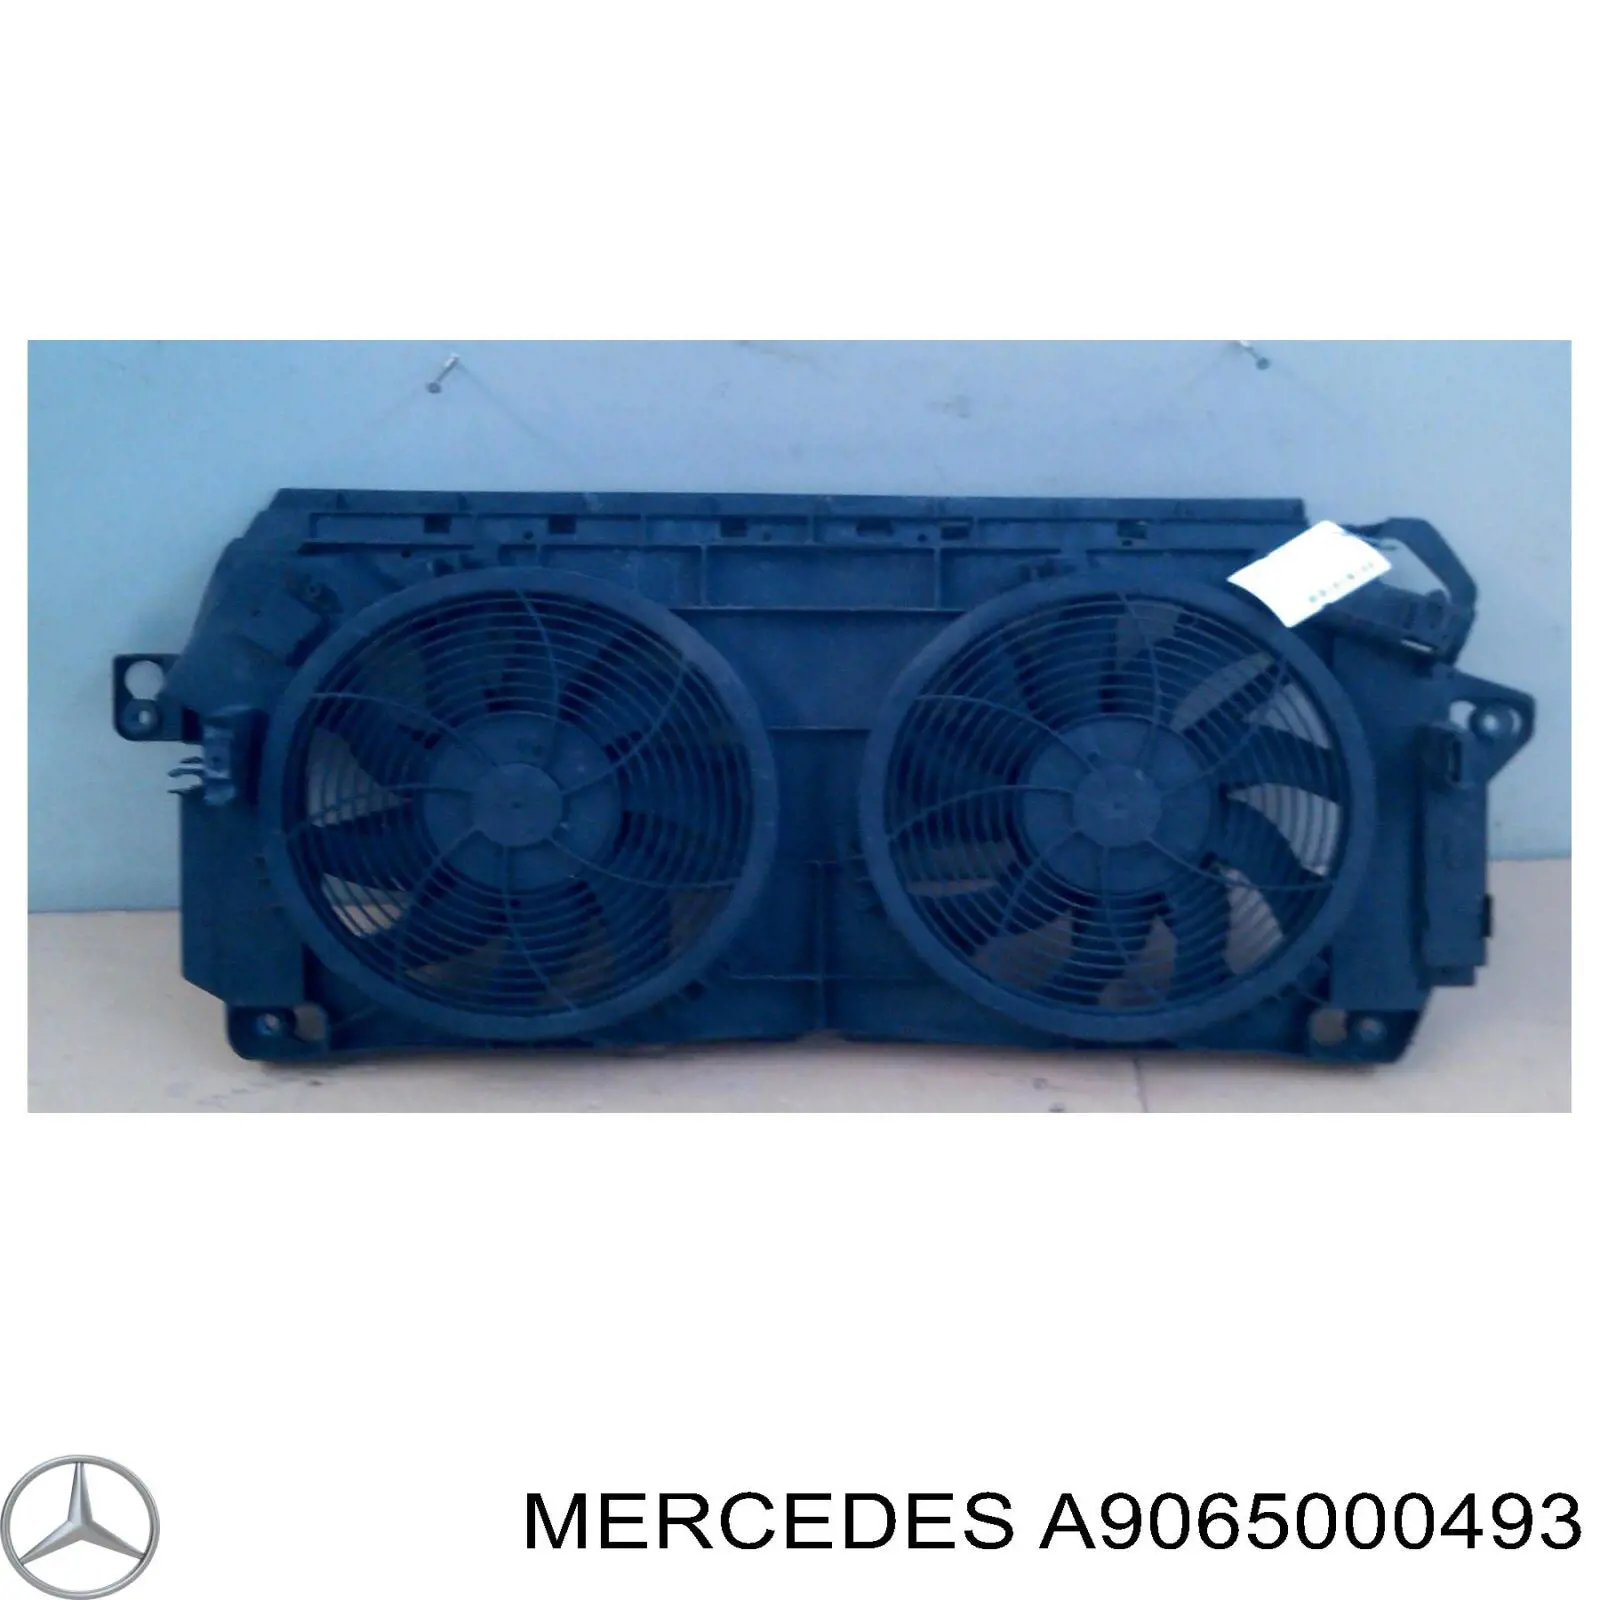 A9065000493 Mercedes rodete ventilador, refrigeración de motor